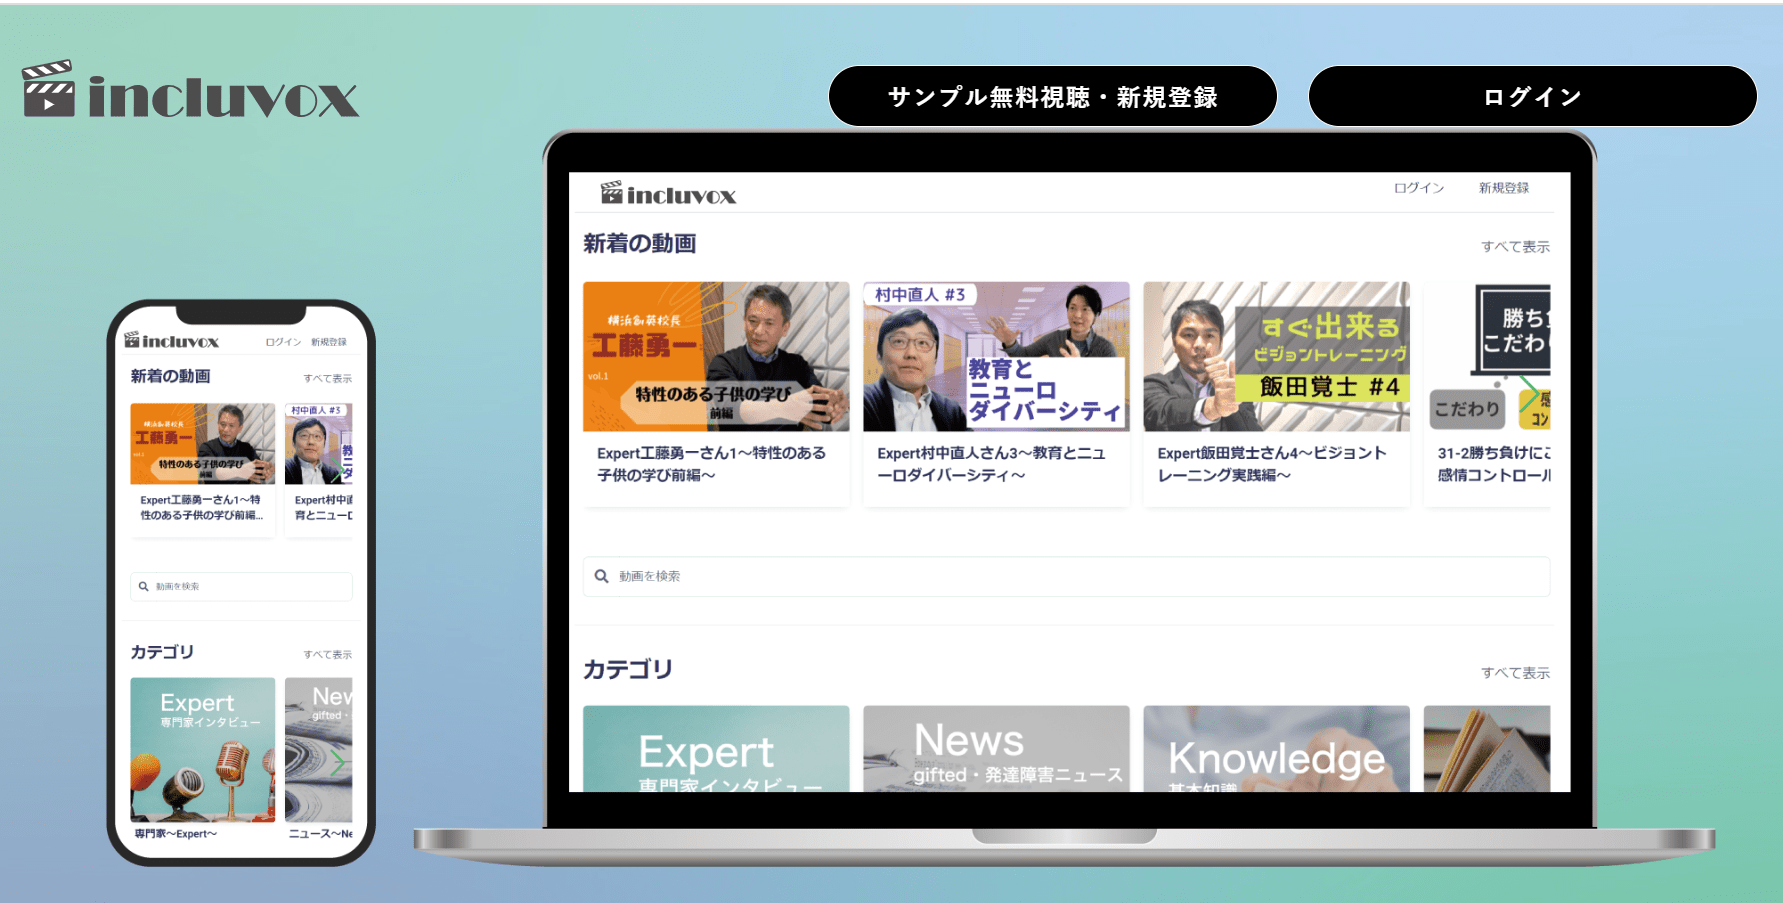 赤平さんが立ち上げた動画サイト「インクルボックス」のホームページ